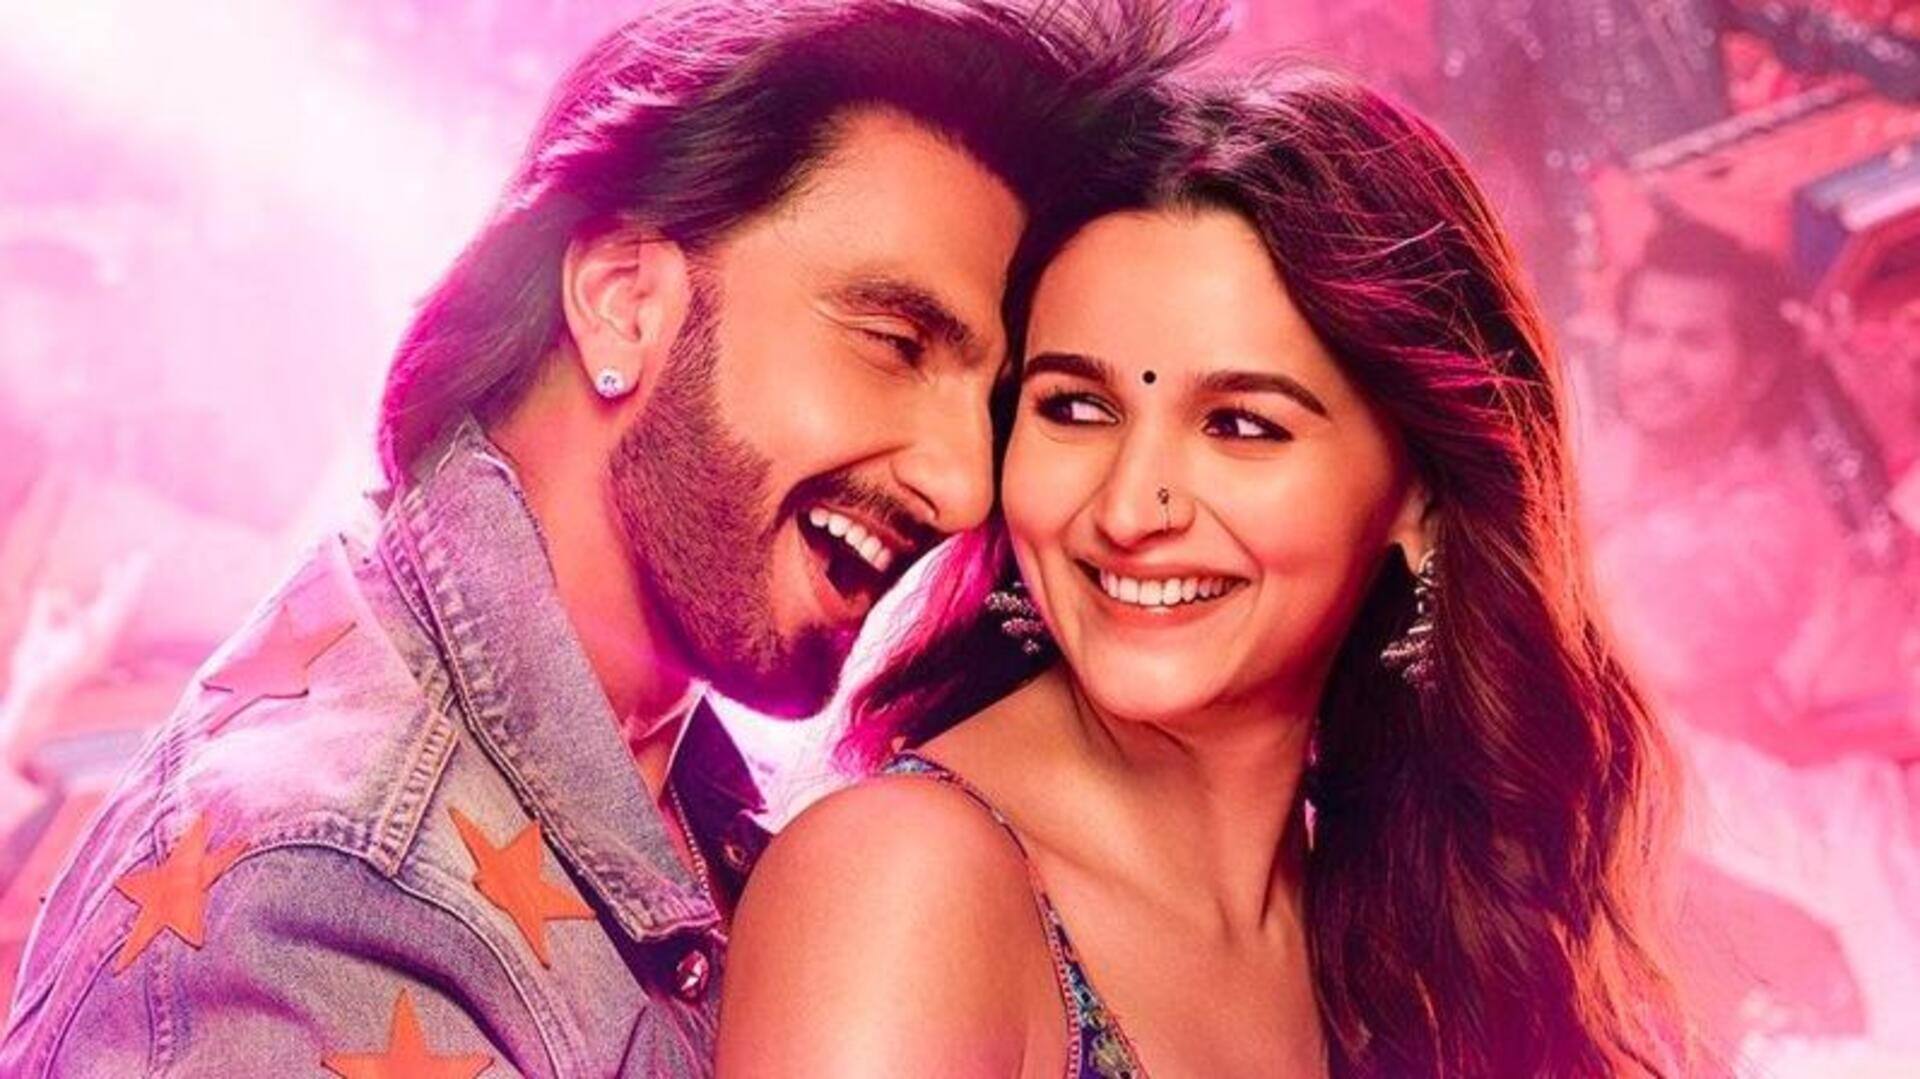 रणवीर-आलिया की फिल्म 'रॉकी और रानी की प्रेम कहानी' का टीजर इस दिन होगा रिलीज  